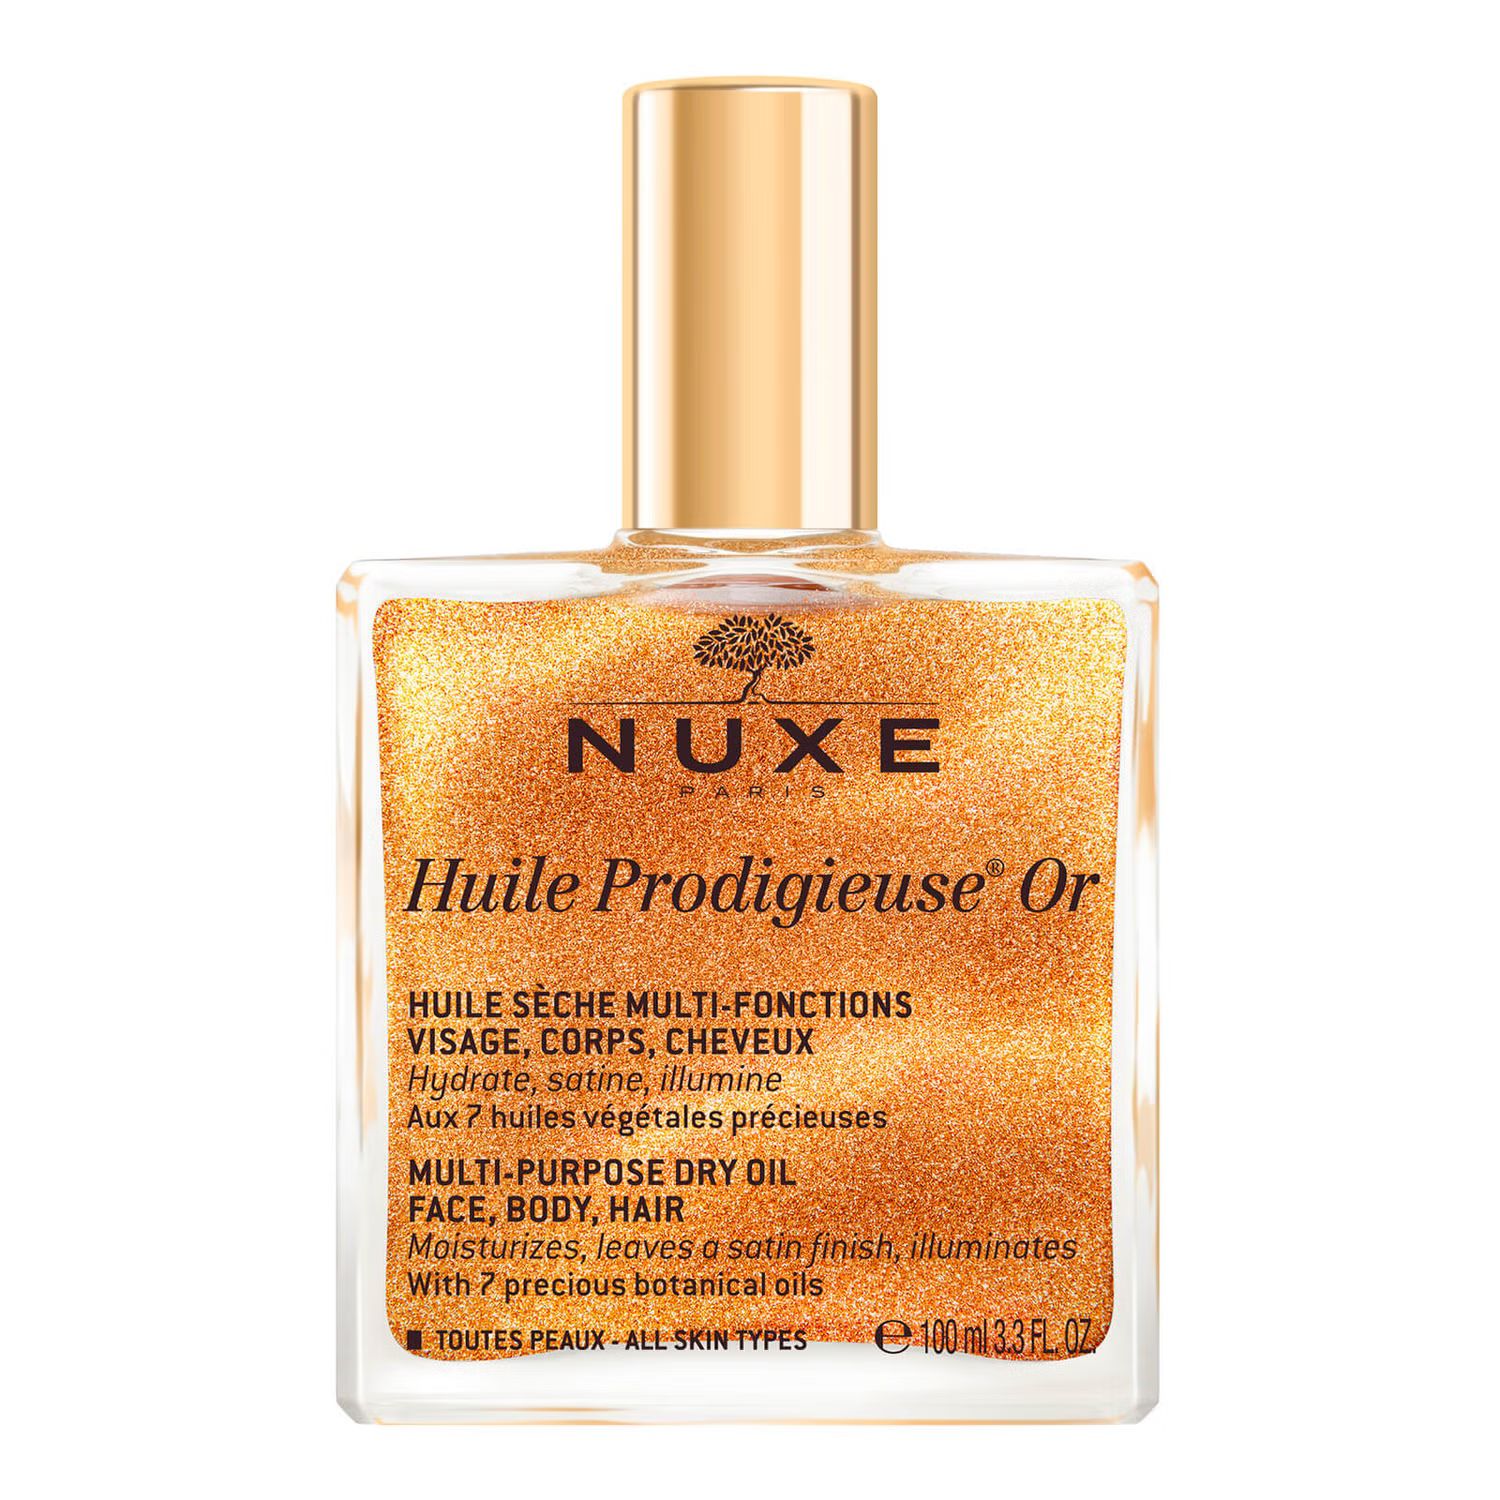 NUXE Huile Prodigieuse Golden Shimmer Multi-Purpose Dry Oil 100ml | Look Fantastic (UK)